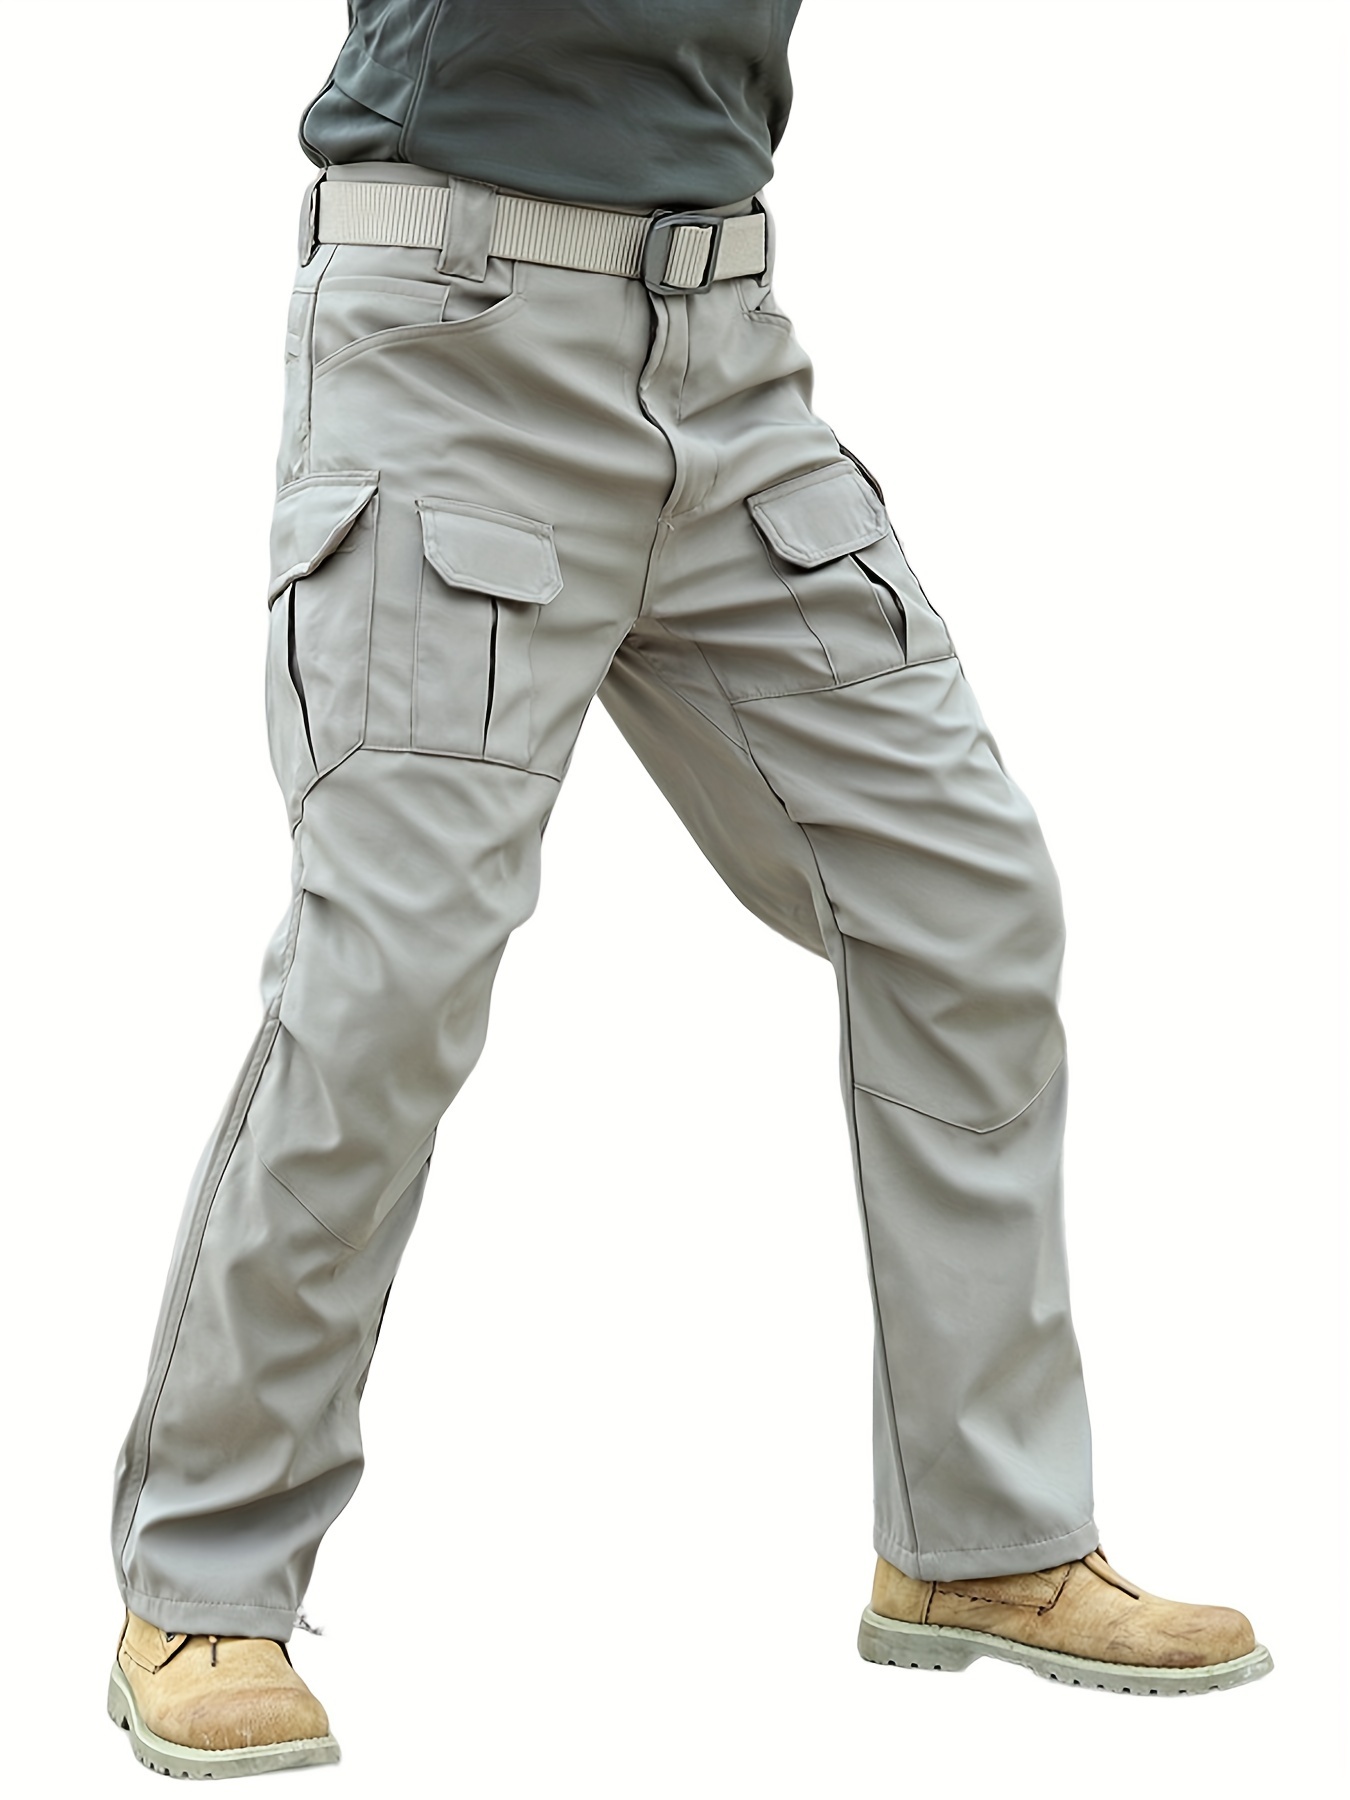 Pantalones Impermeables Tácticos Militares [s]